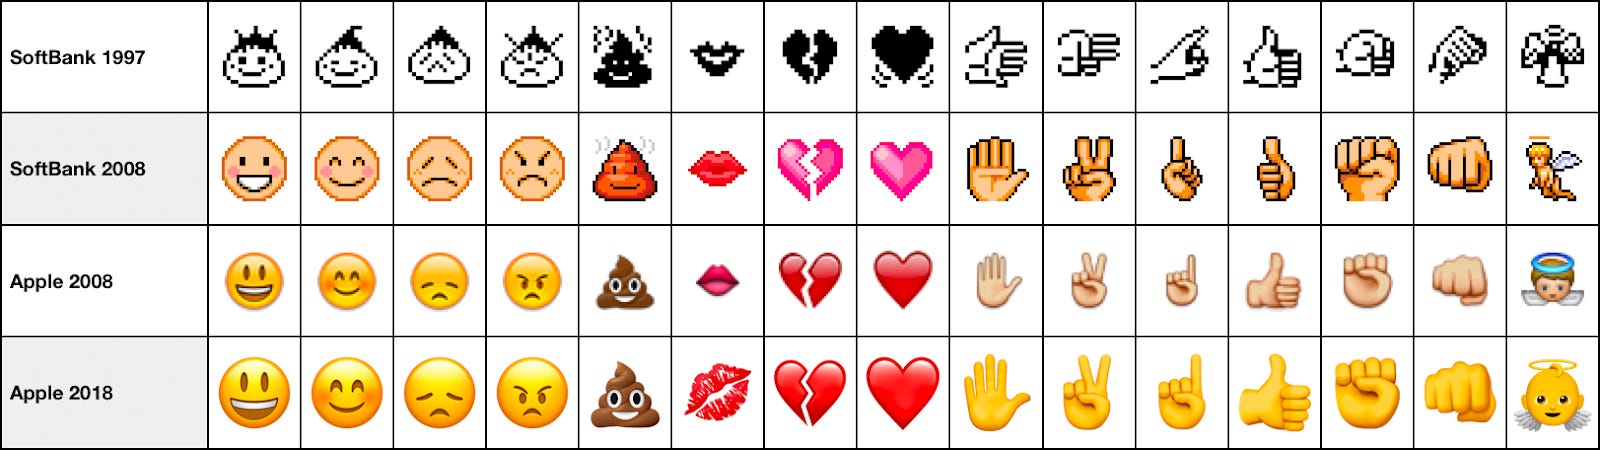 Petition · Create a lip-biting emoji ·